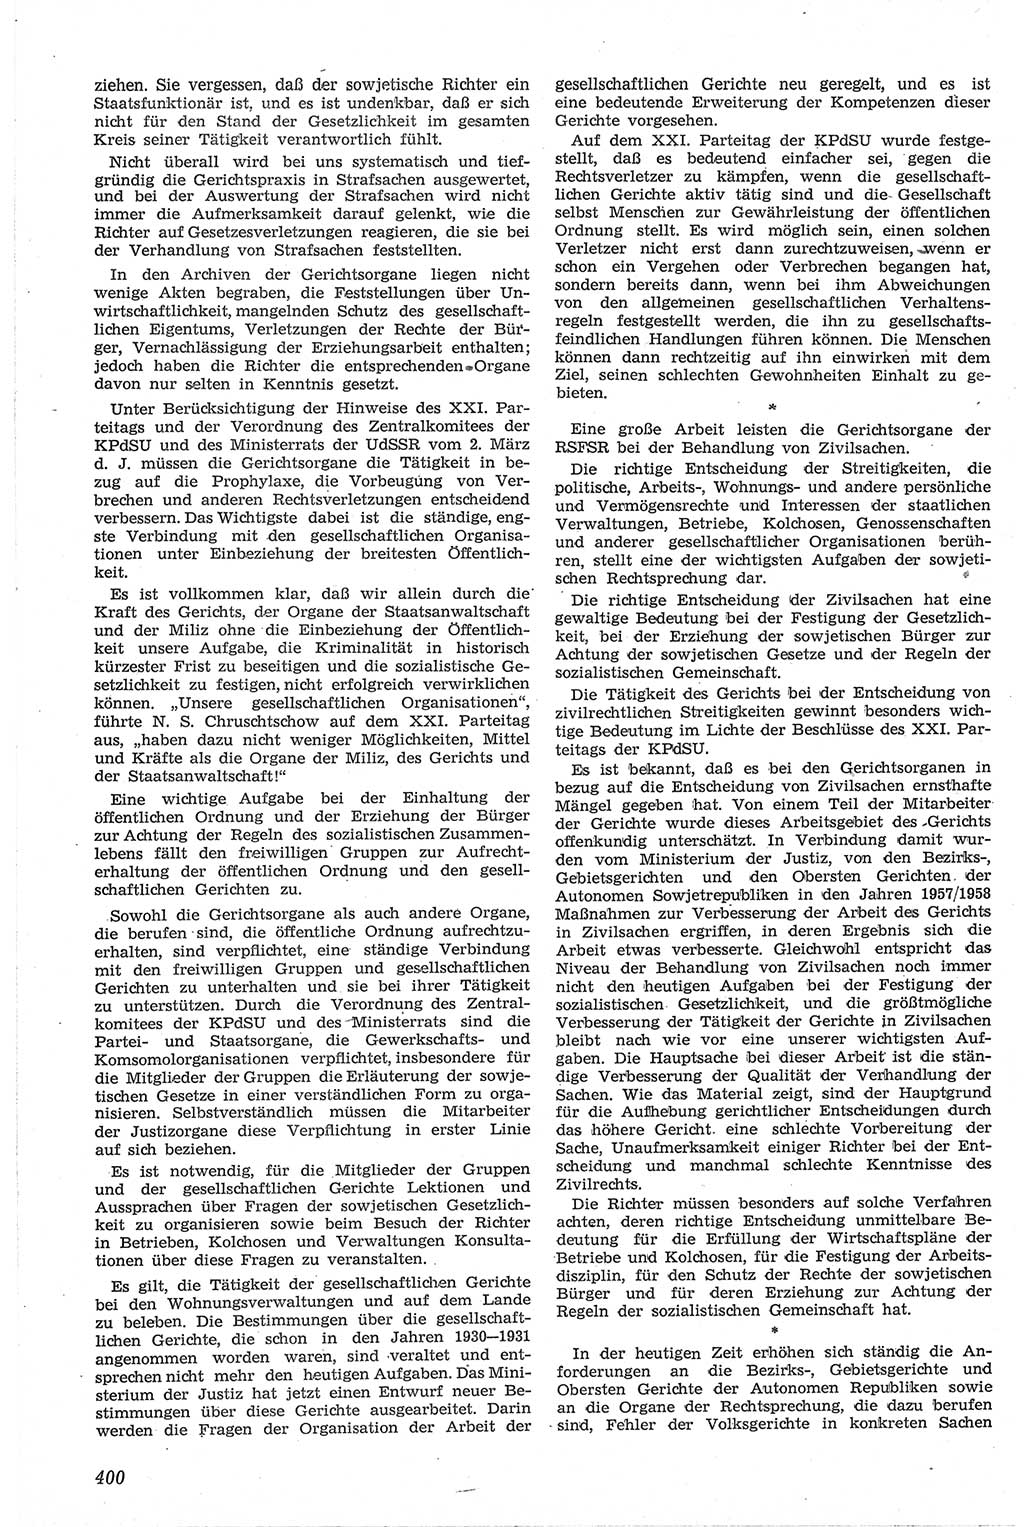 Neue Justiz (NJ), Zeitschrift für Recht und Rechtswissenschaft [Deutsche Demokratische Republik (DDR)], 13. Jahrgang 1959, Seite 400 (NJ DDR 1959, S. 400)